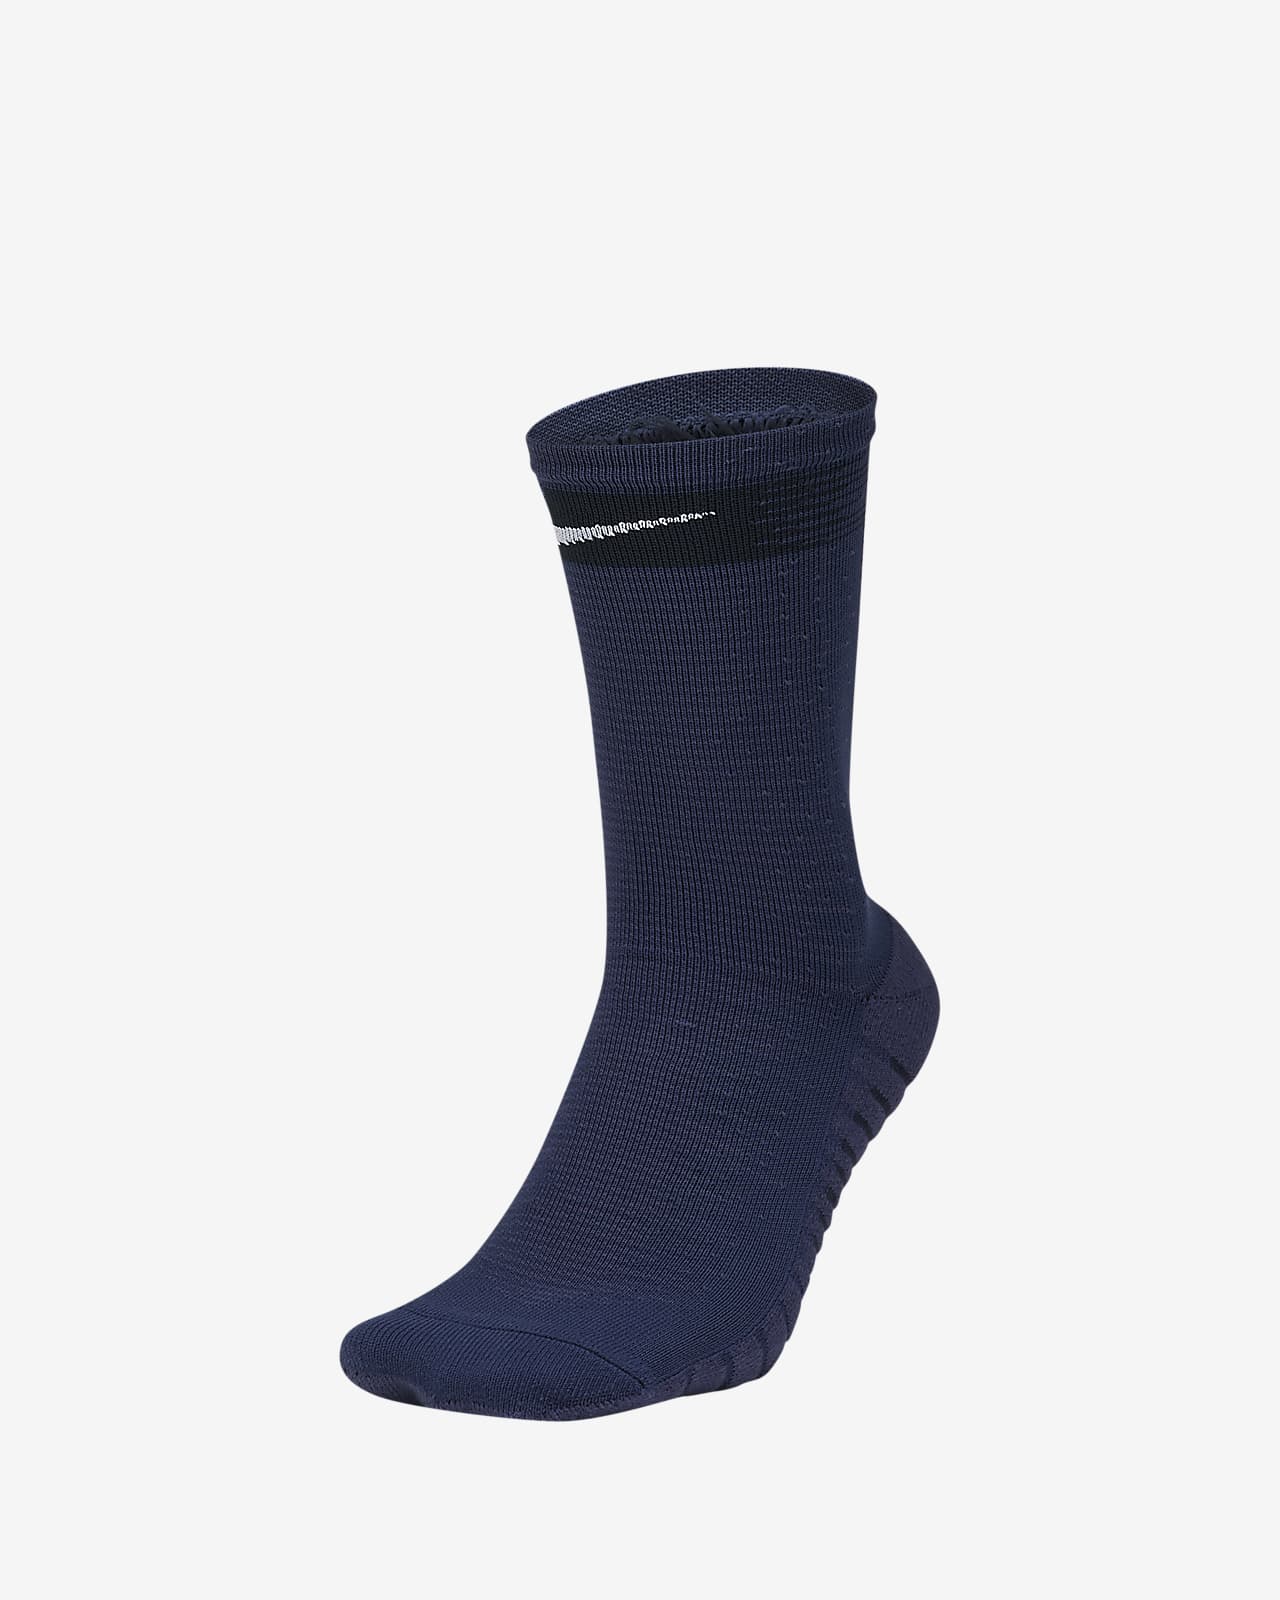 Buy > nike squad socks > in stock